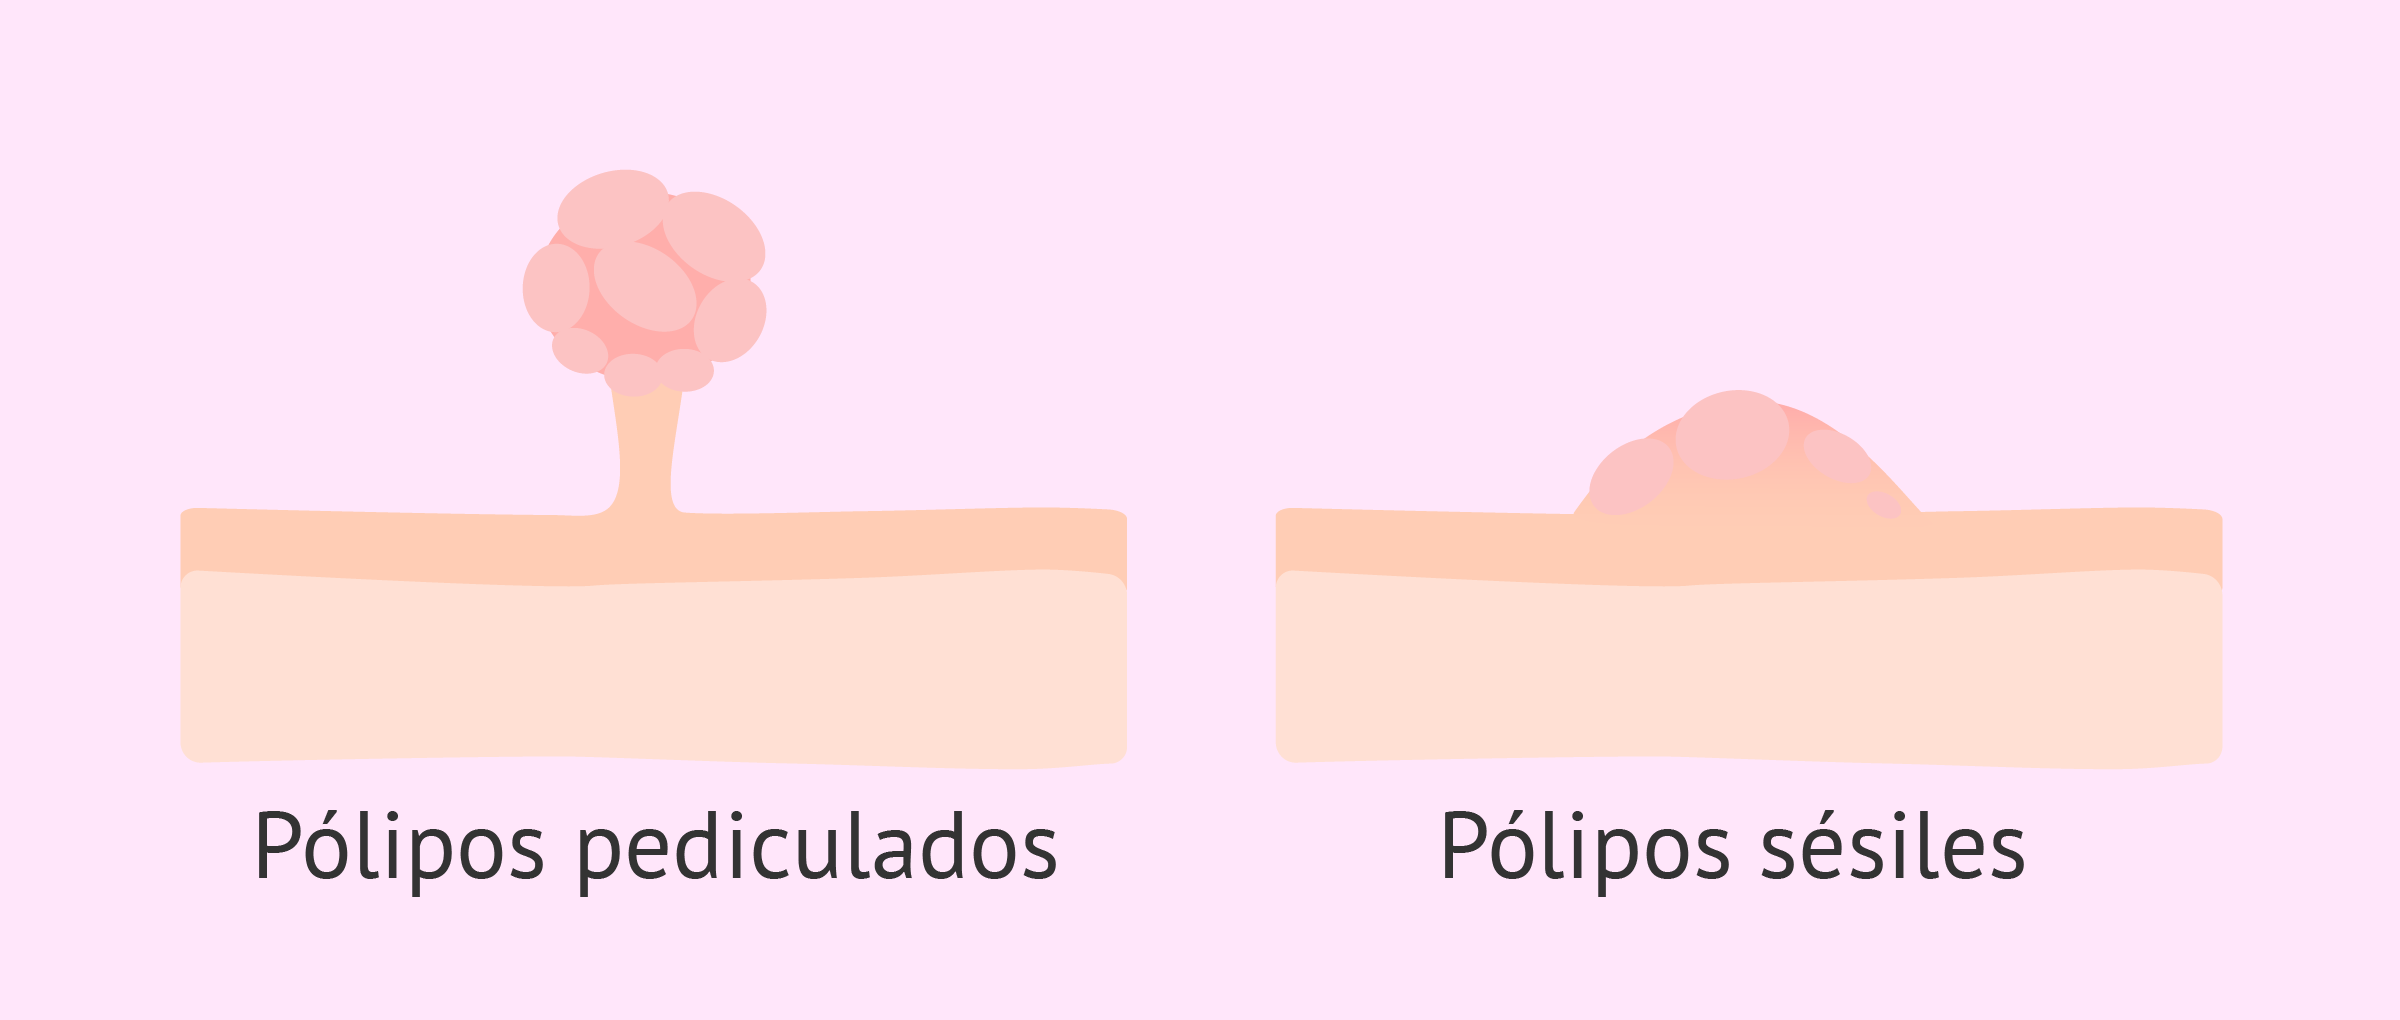 Tipos de pólipos uterinos: sésiles y pediculados